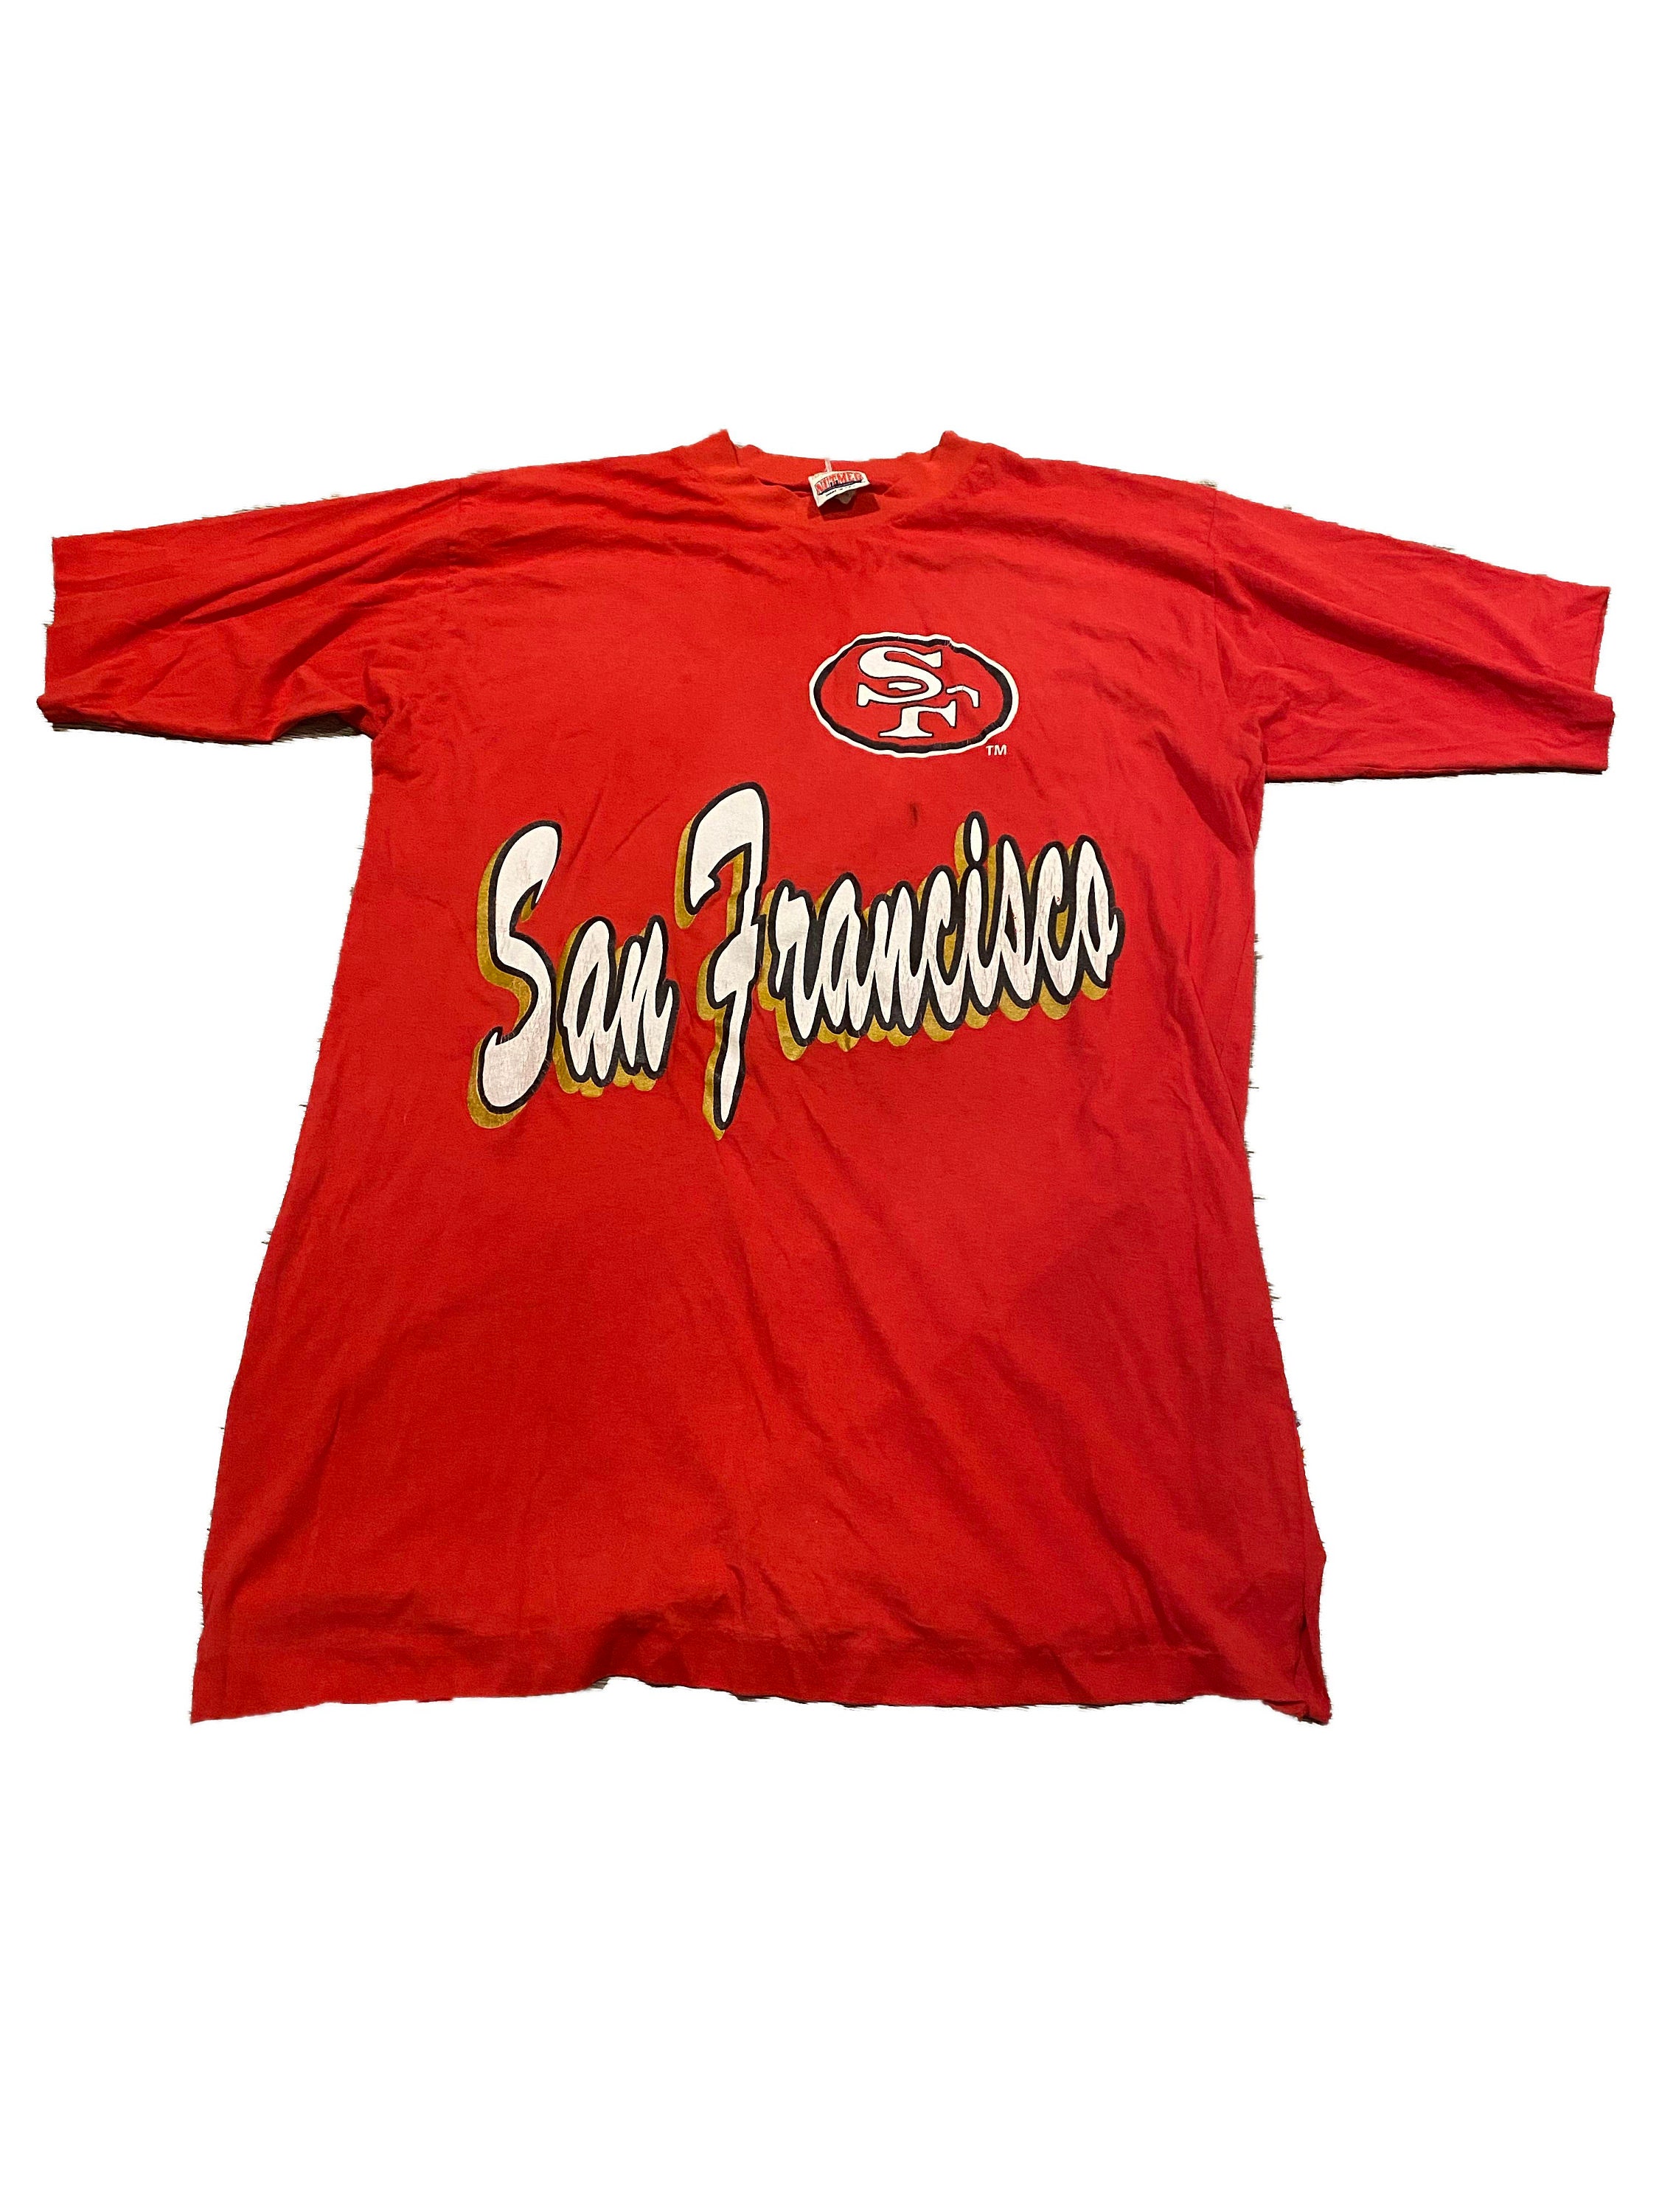 49ers Shirt / Vintage / San Francisco 49ers / Niners / NFL | Etsy